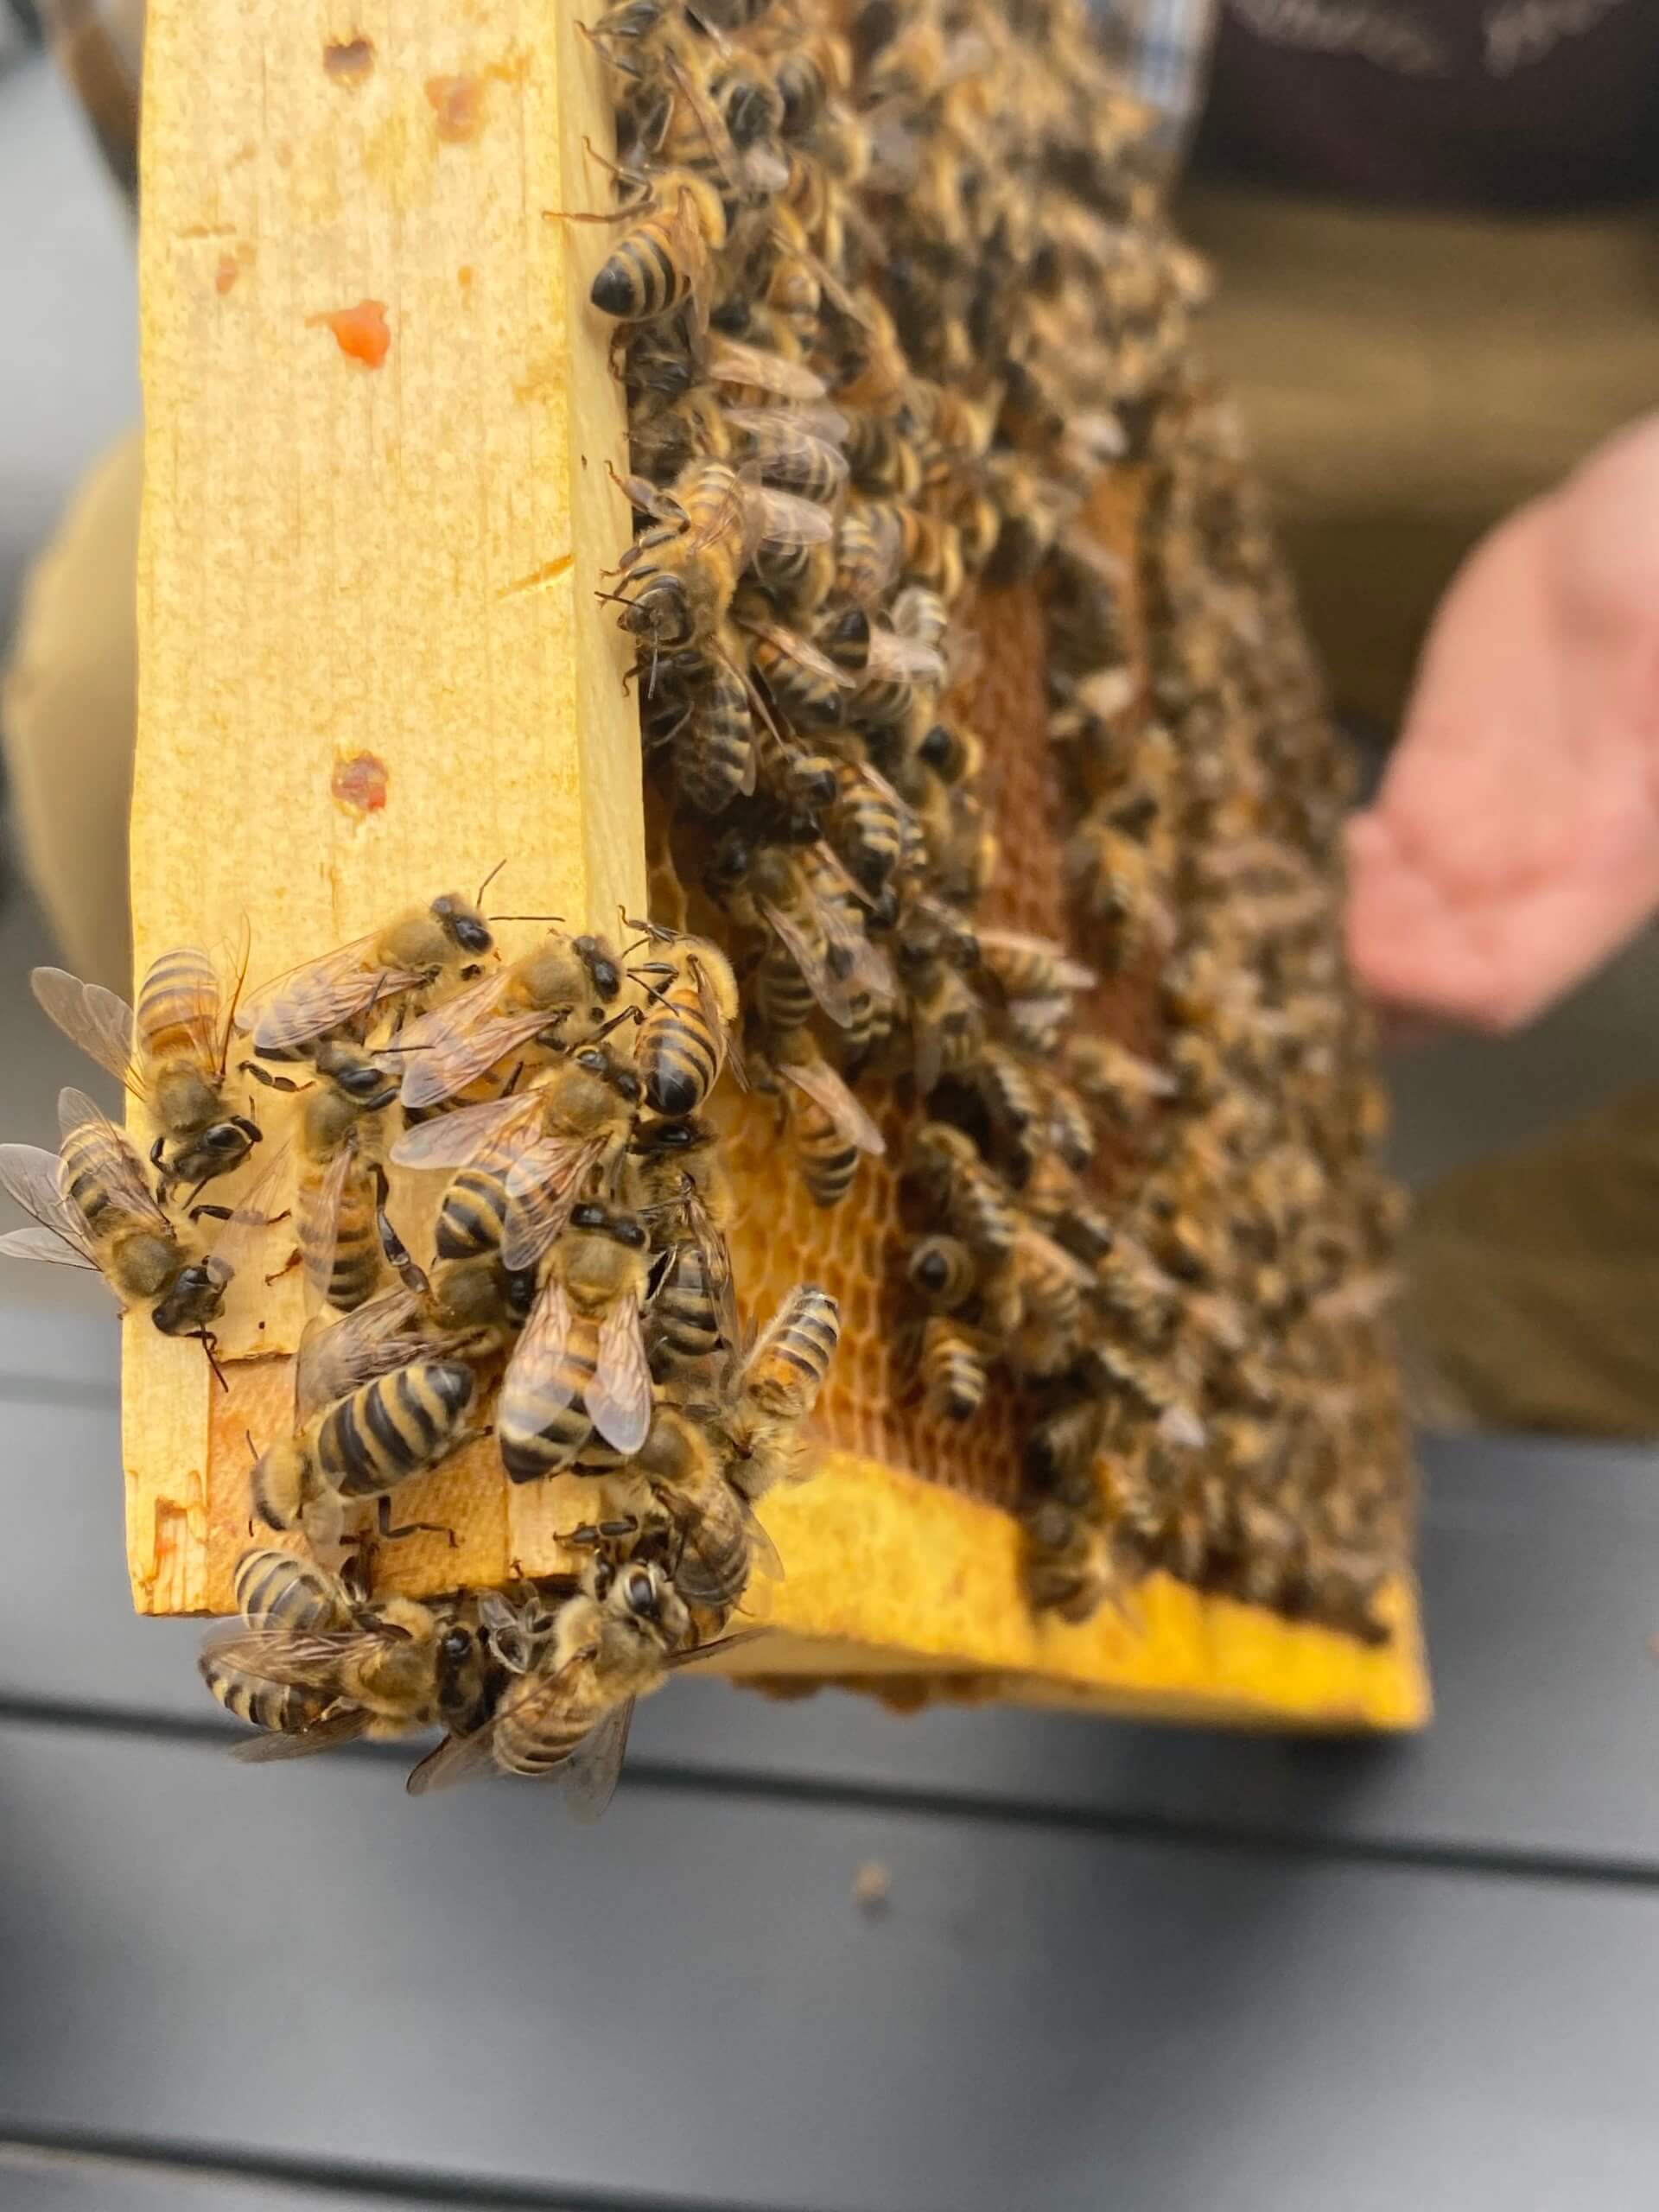 Sweet As Honey: Urban Beekeeping in Toronto